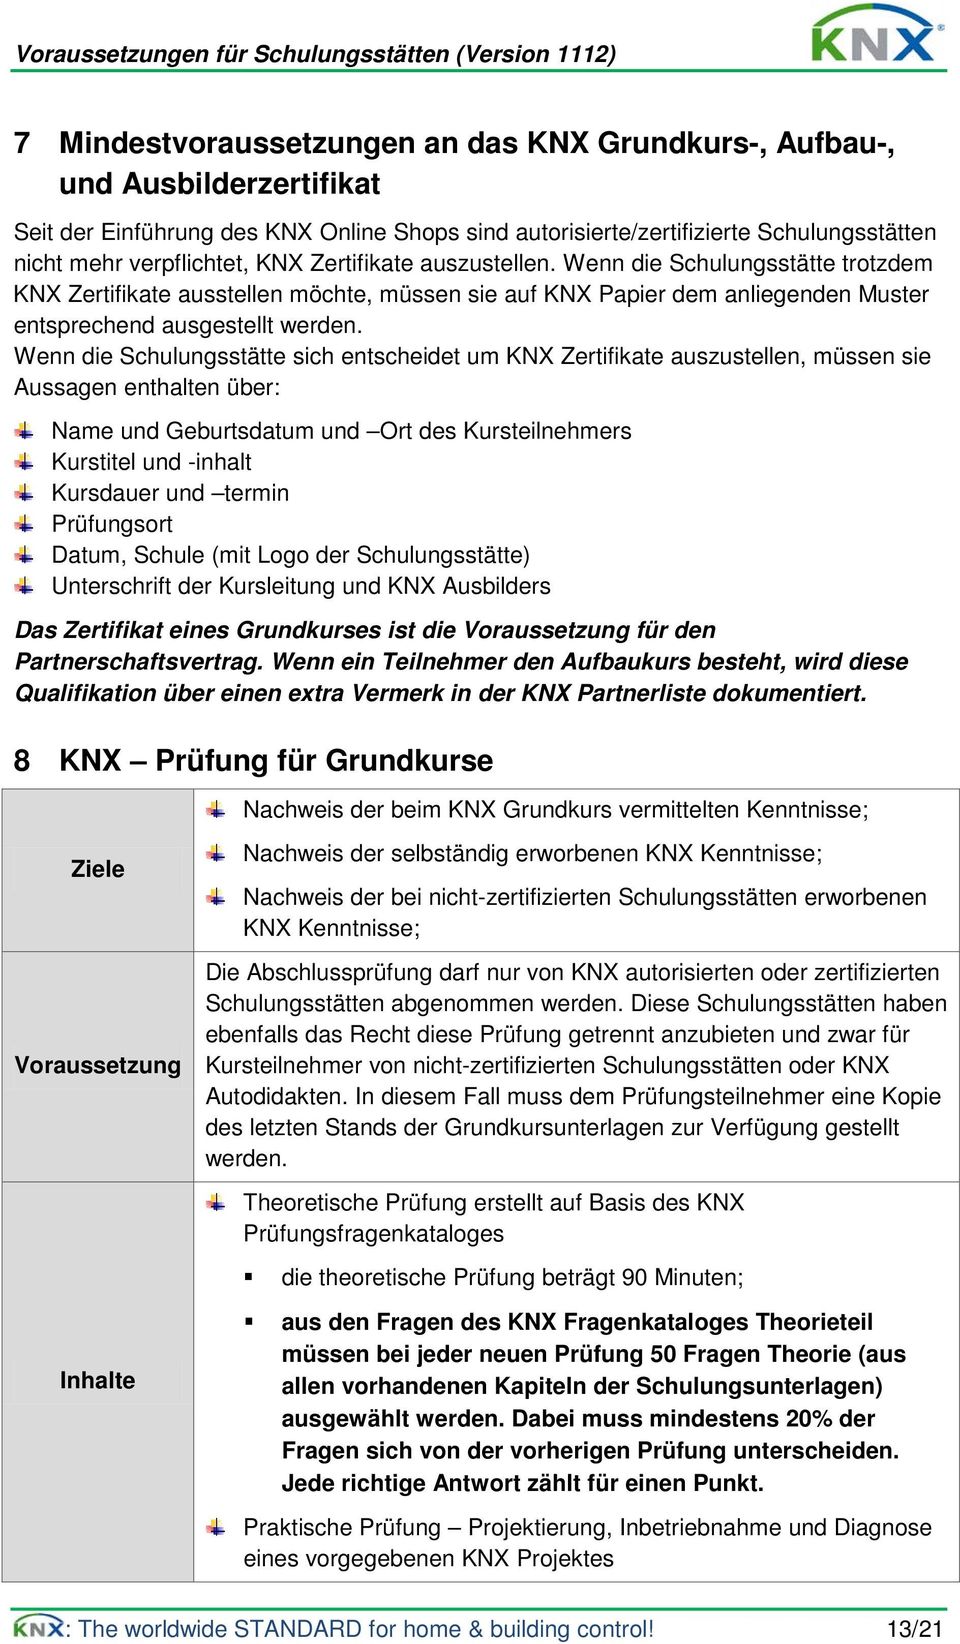 Wenn die Schulungsstätte sich entscheidet um KNX Zertifikate auszustellen, müssen sie Aussagen enthalten über: Name und Geburtsdatum und Ort des Kursteilnehmers Kurstitel und -inhalt Kursdauer und